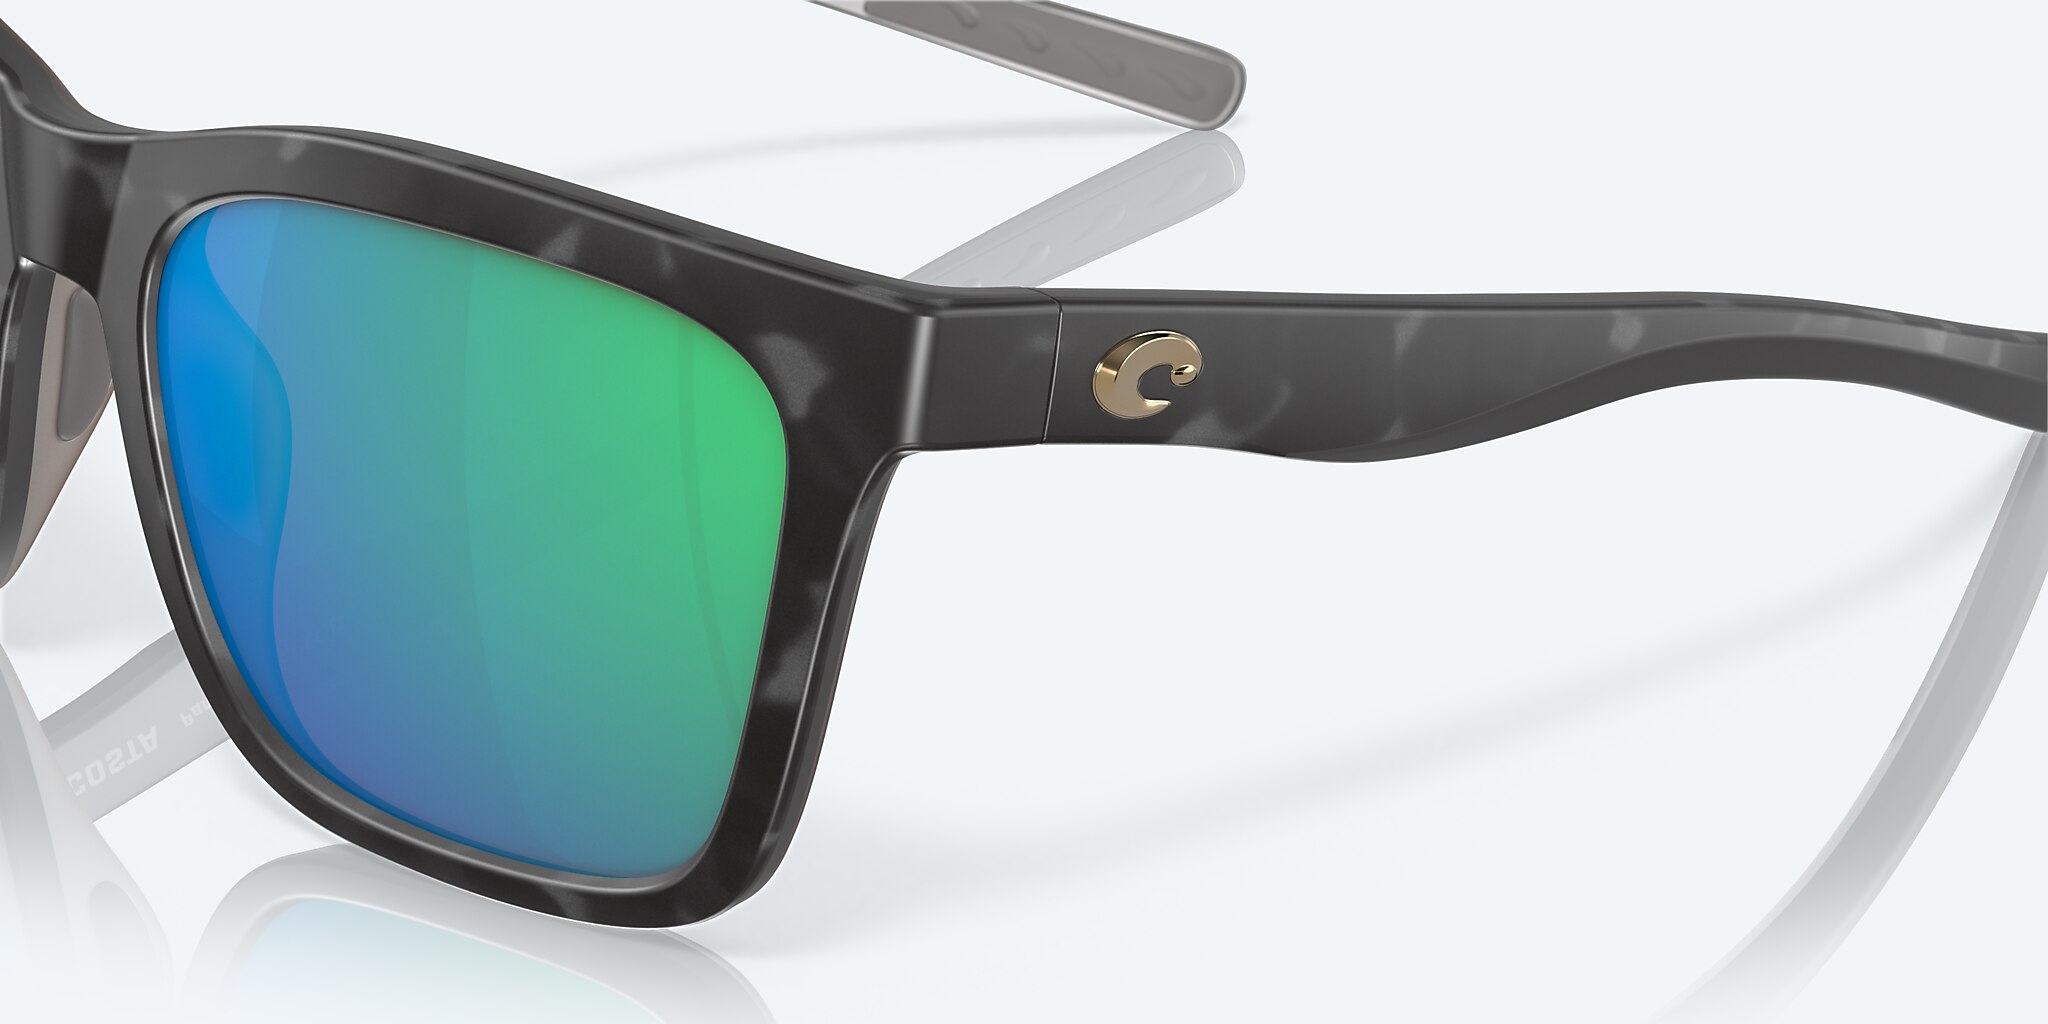 Panga Polarized Sunglasses in Green Mirror